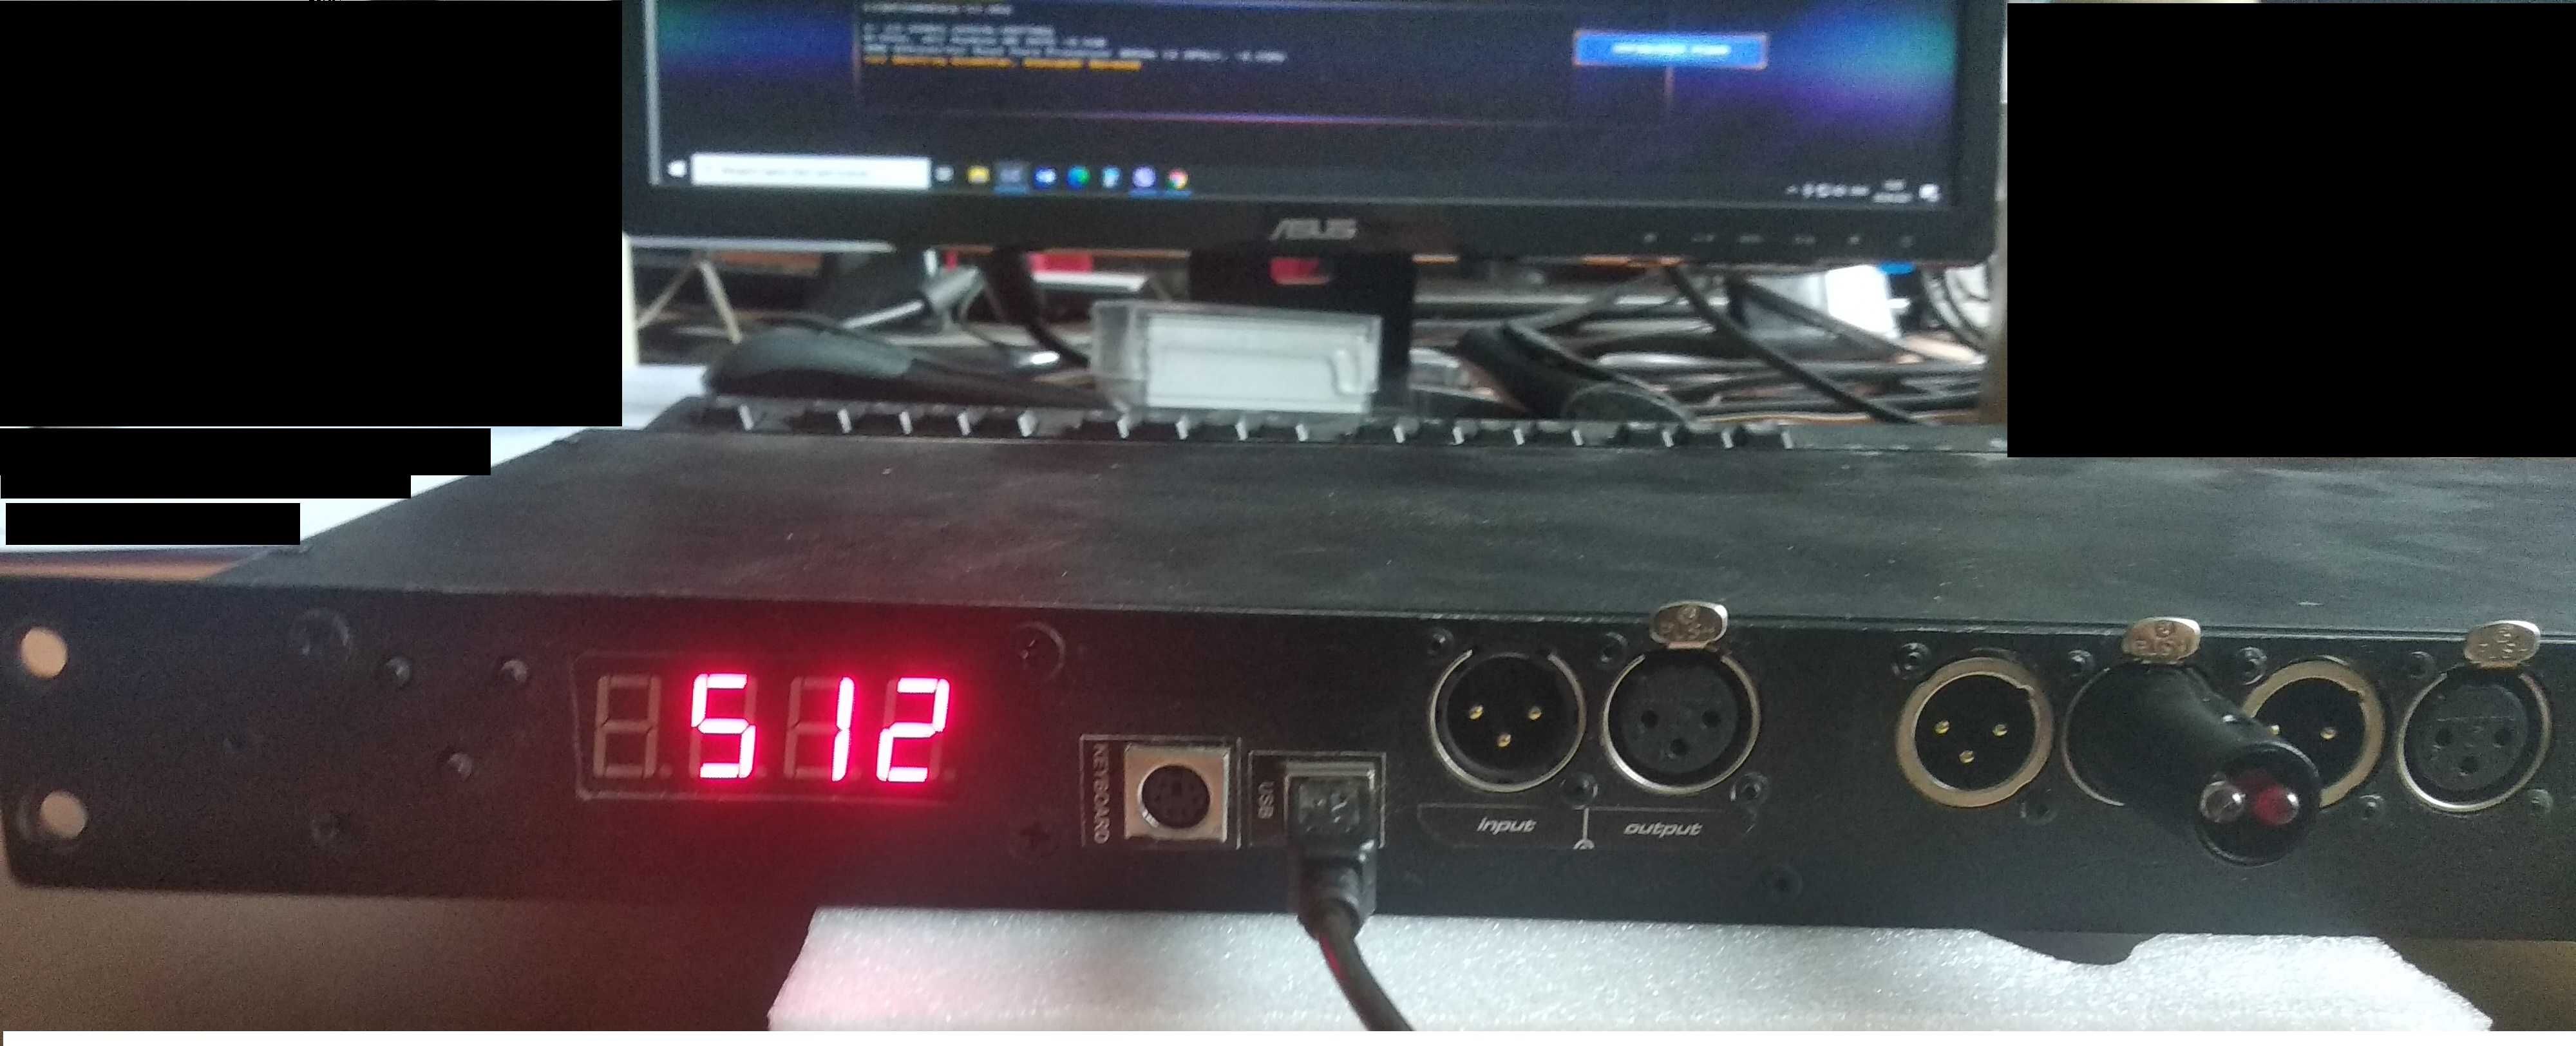 Контролер DMX-интерфейс LIGHTCONVERSE - 2048Х+512 в рек исполнении